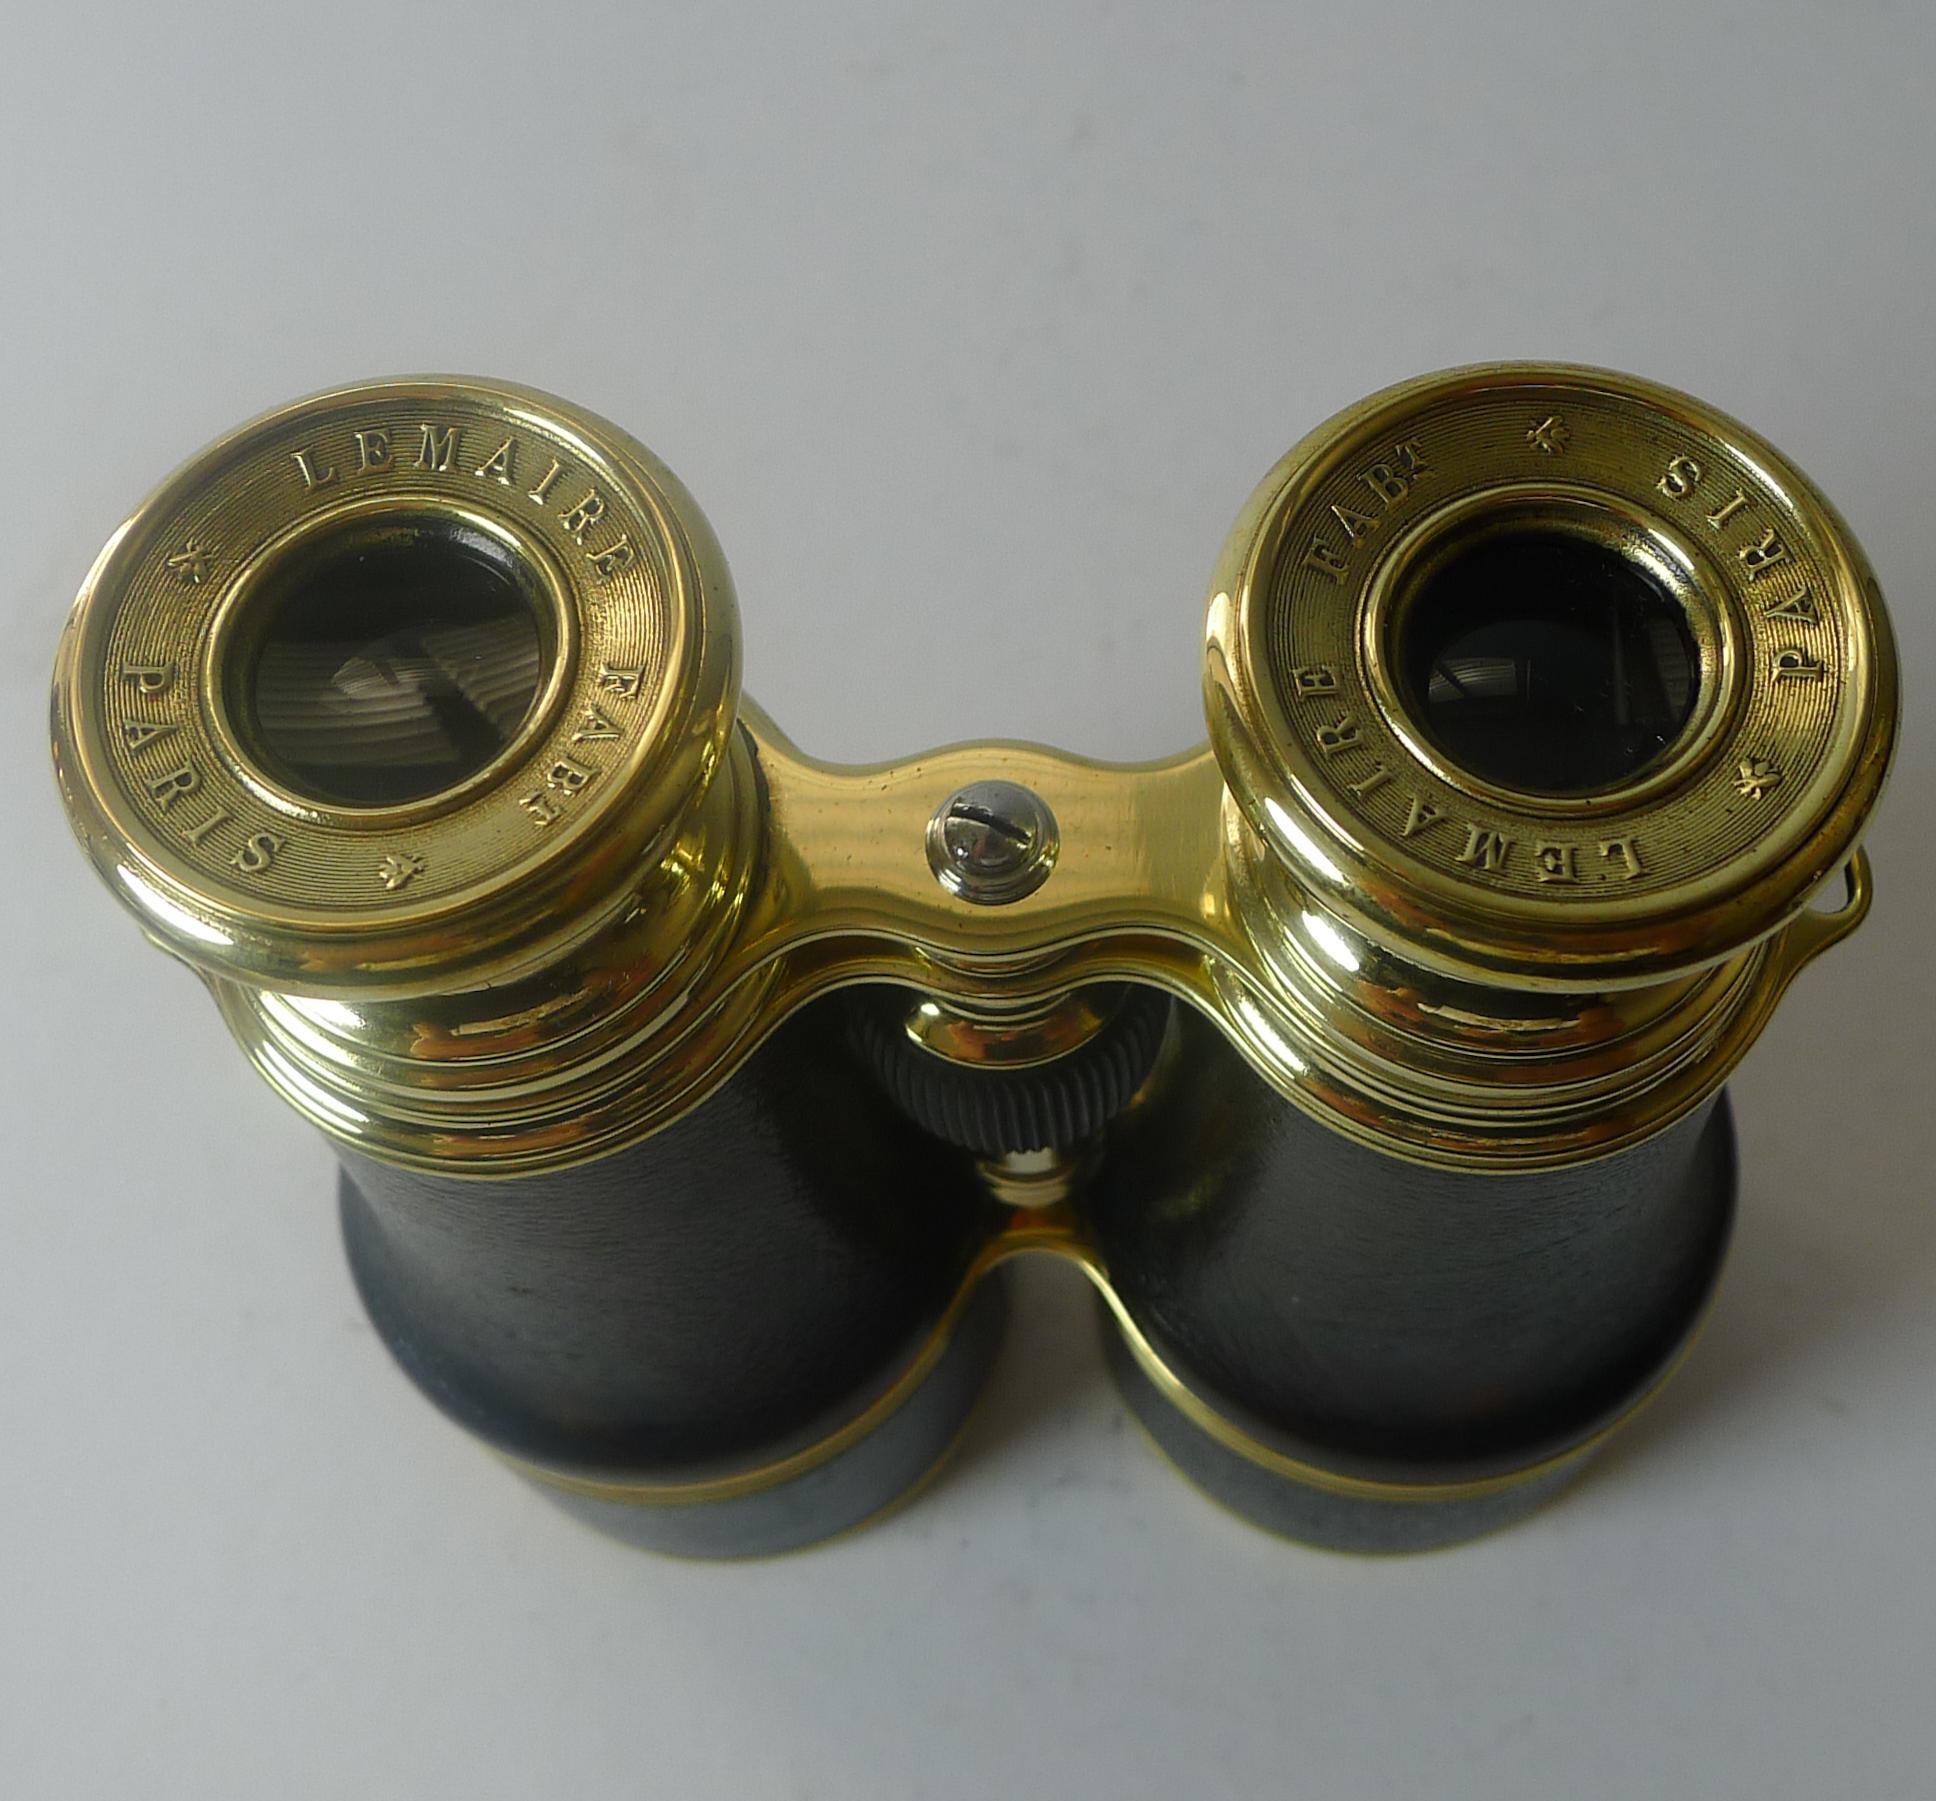 Brass Pair WW1 Binoculars - British Officer's Issue by LeMaire, Paris